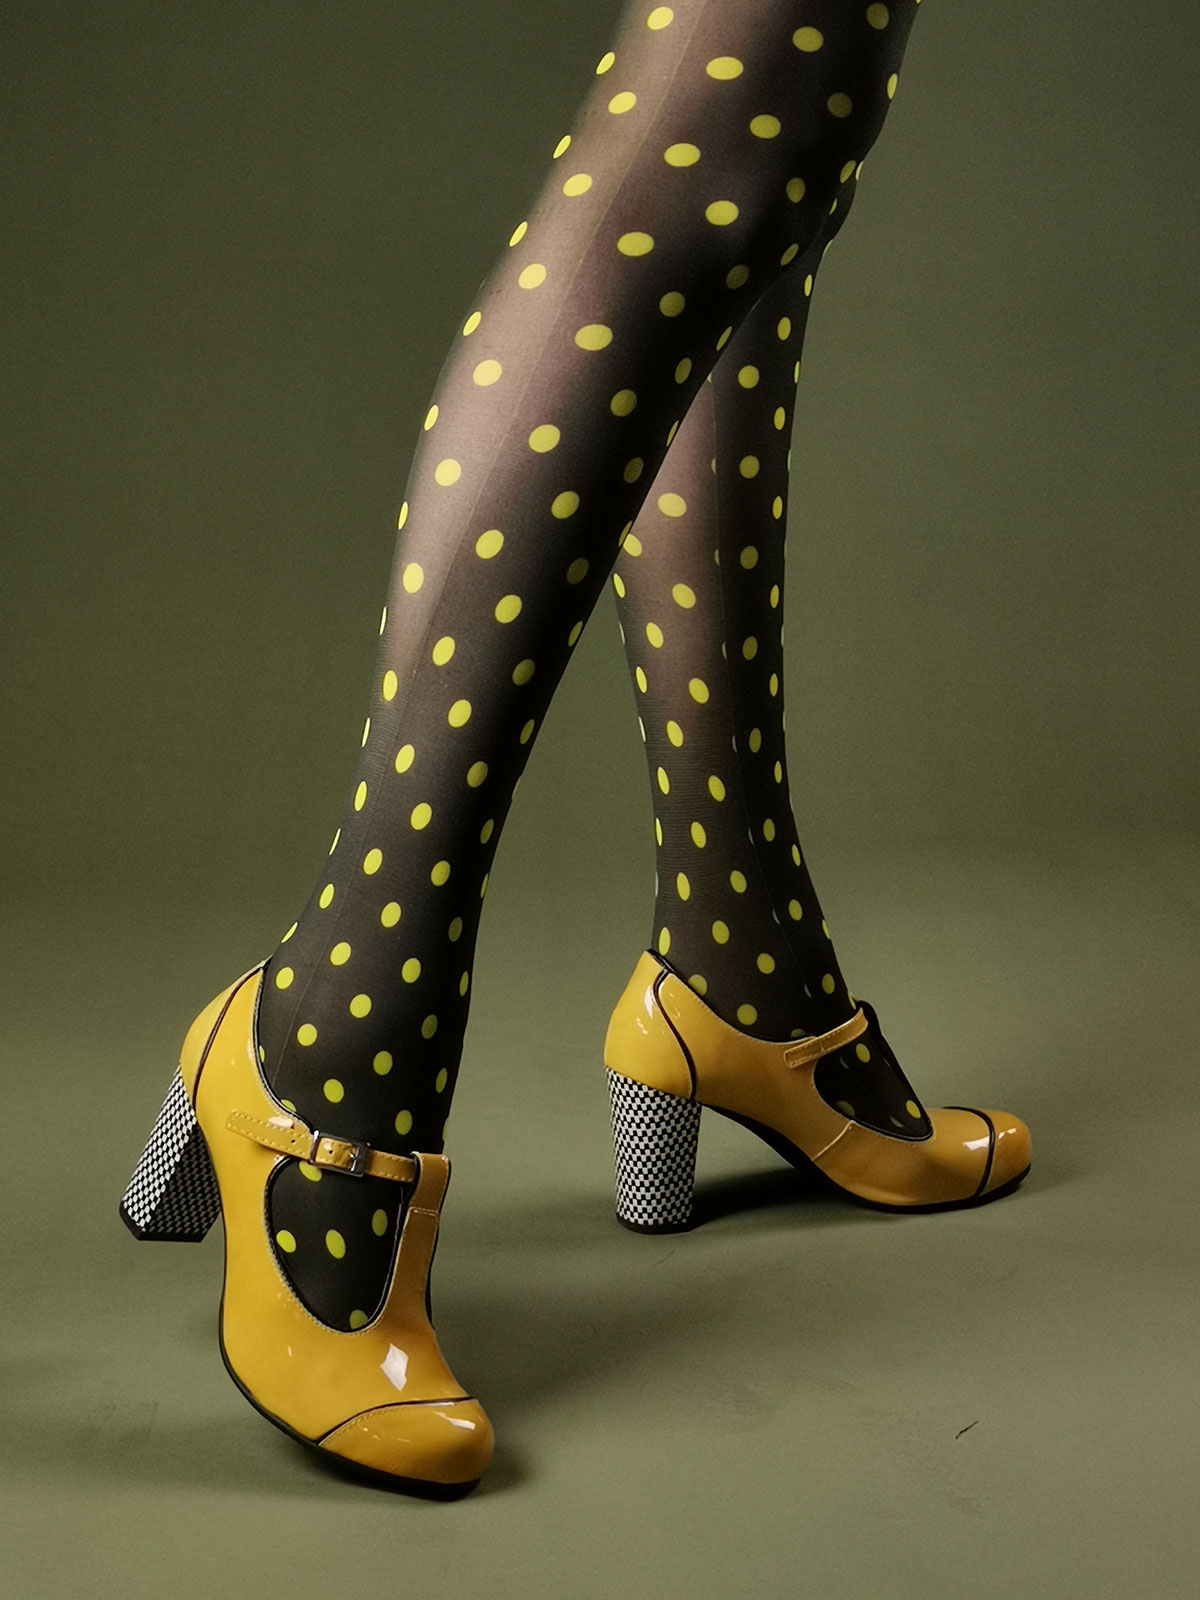 Yellow Polka Dot Tights- ladies vintage retro 60s – 70s style